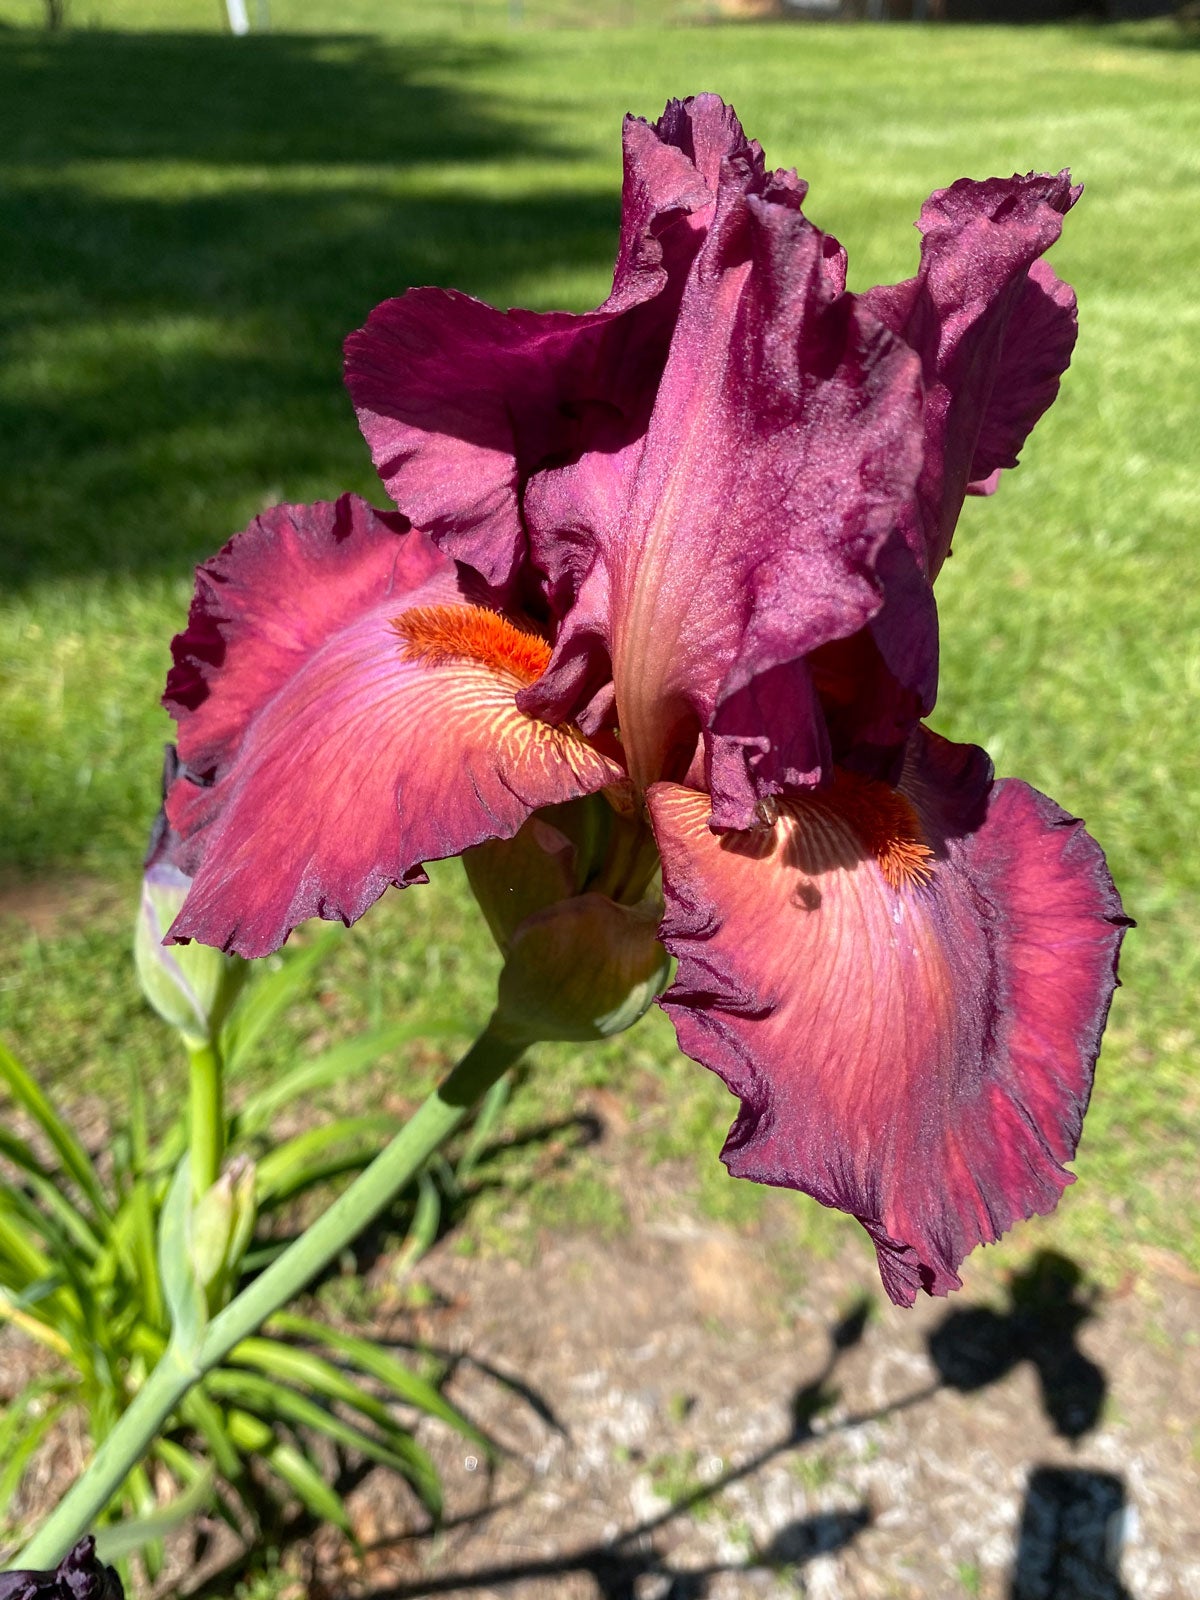 htbearded iris care – learn about growing bearded iris flowers